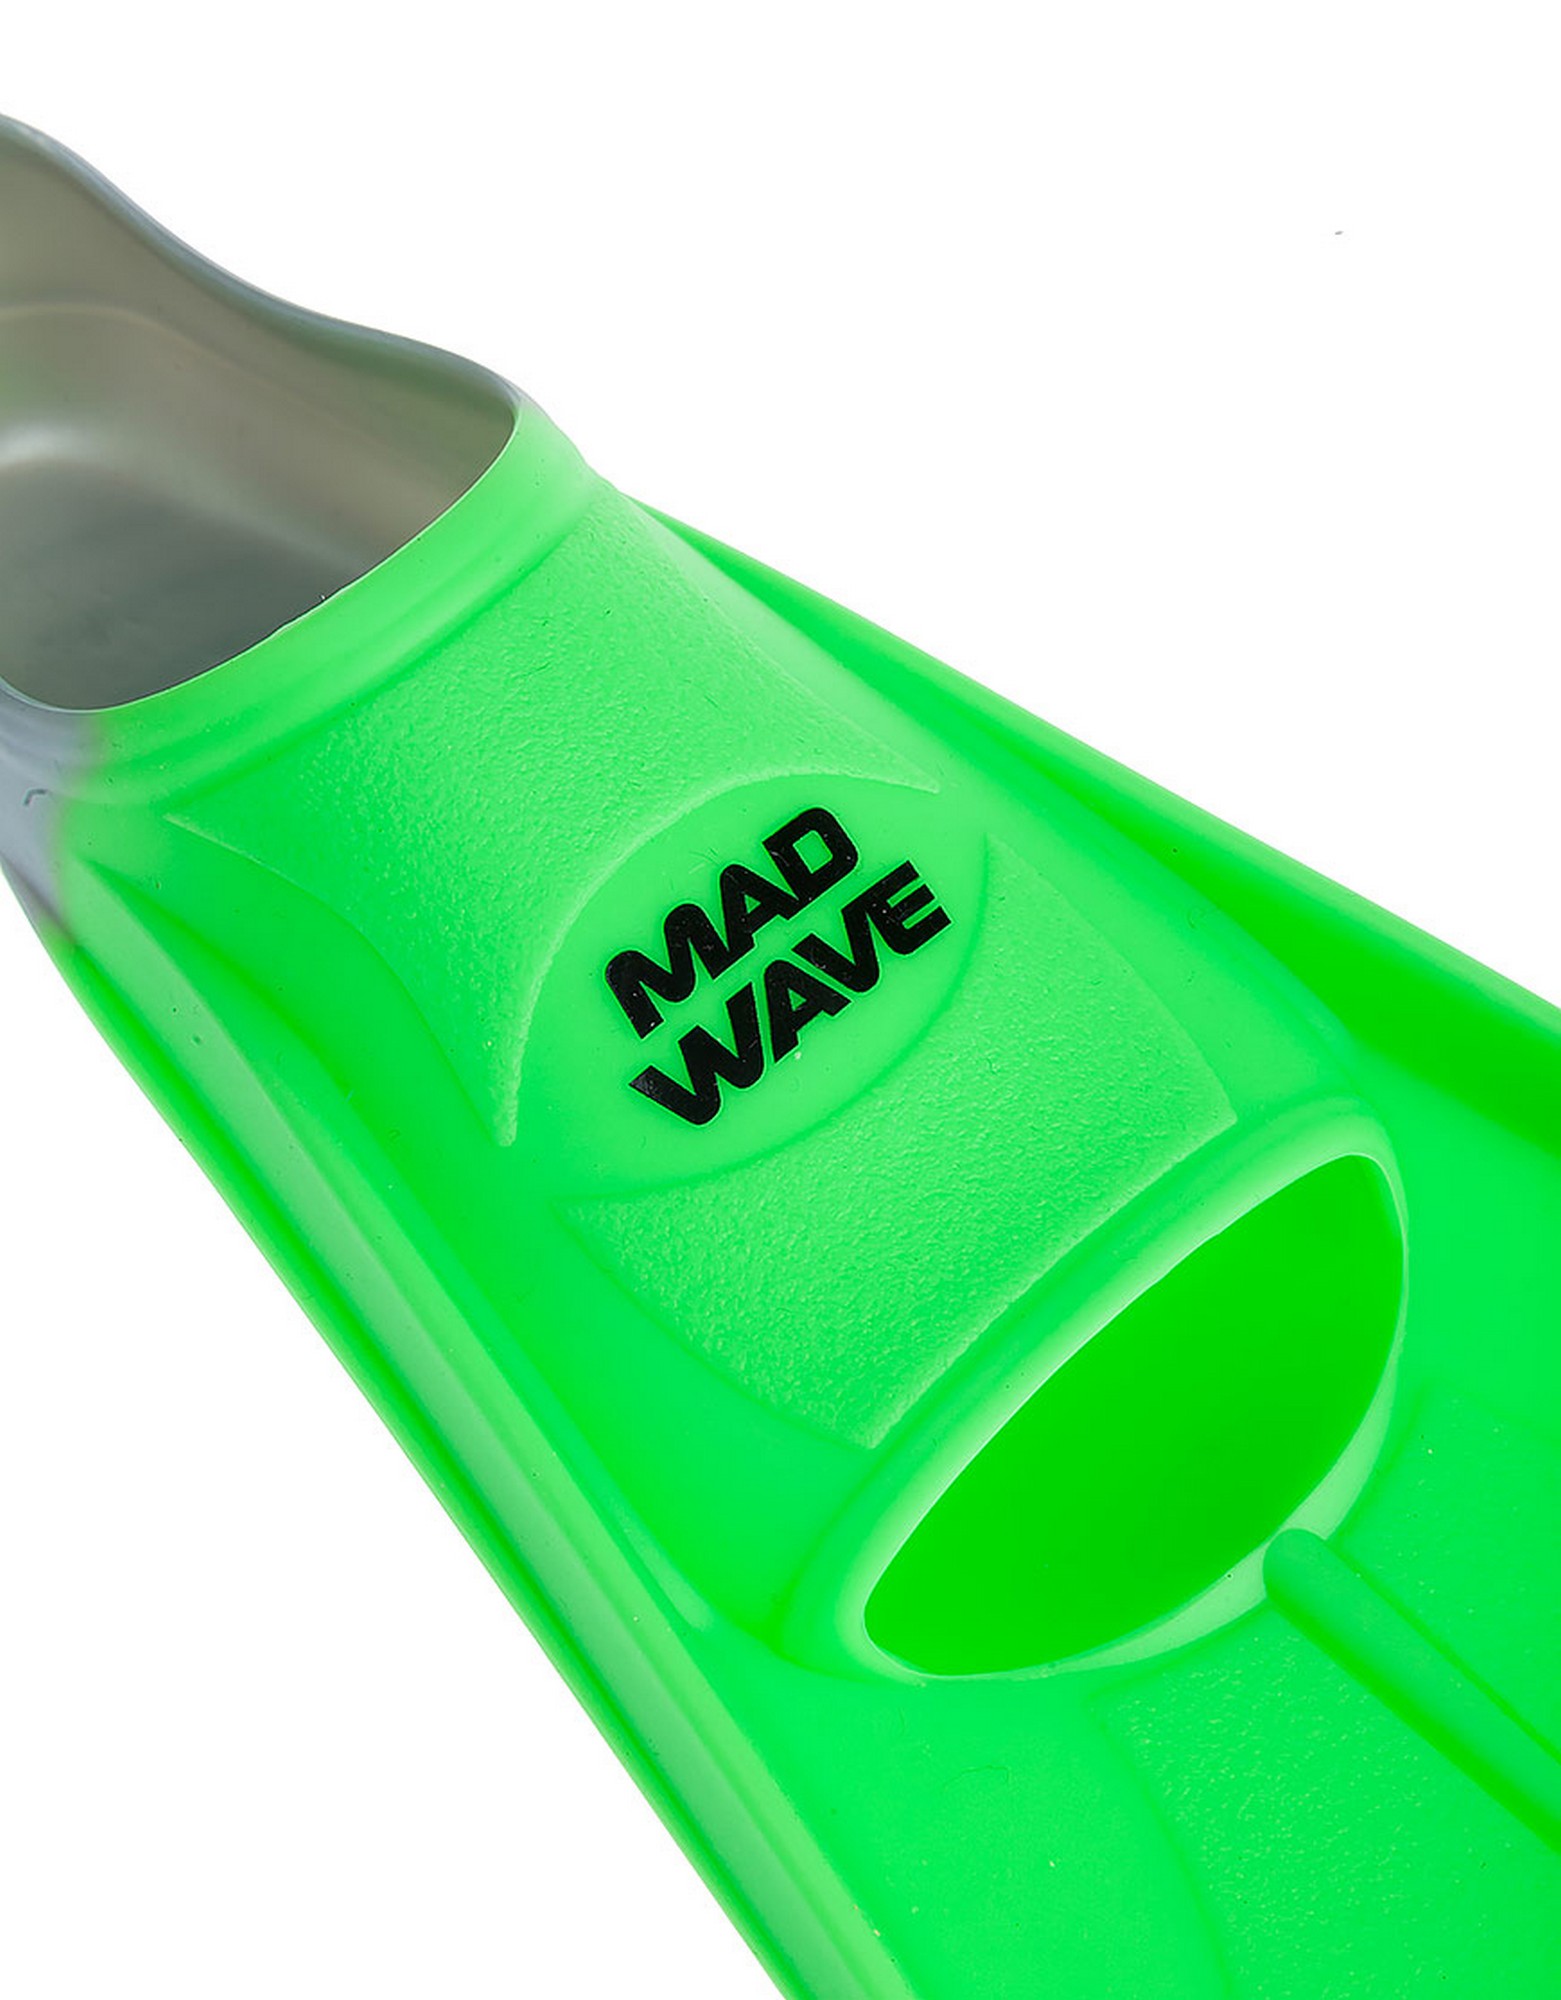 Ласты Mad Wave Fins Training M0747 10 10W зеленый 1561_2000